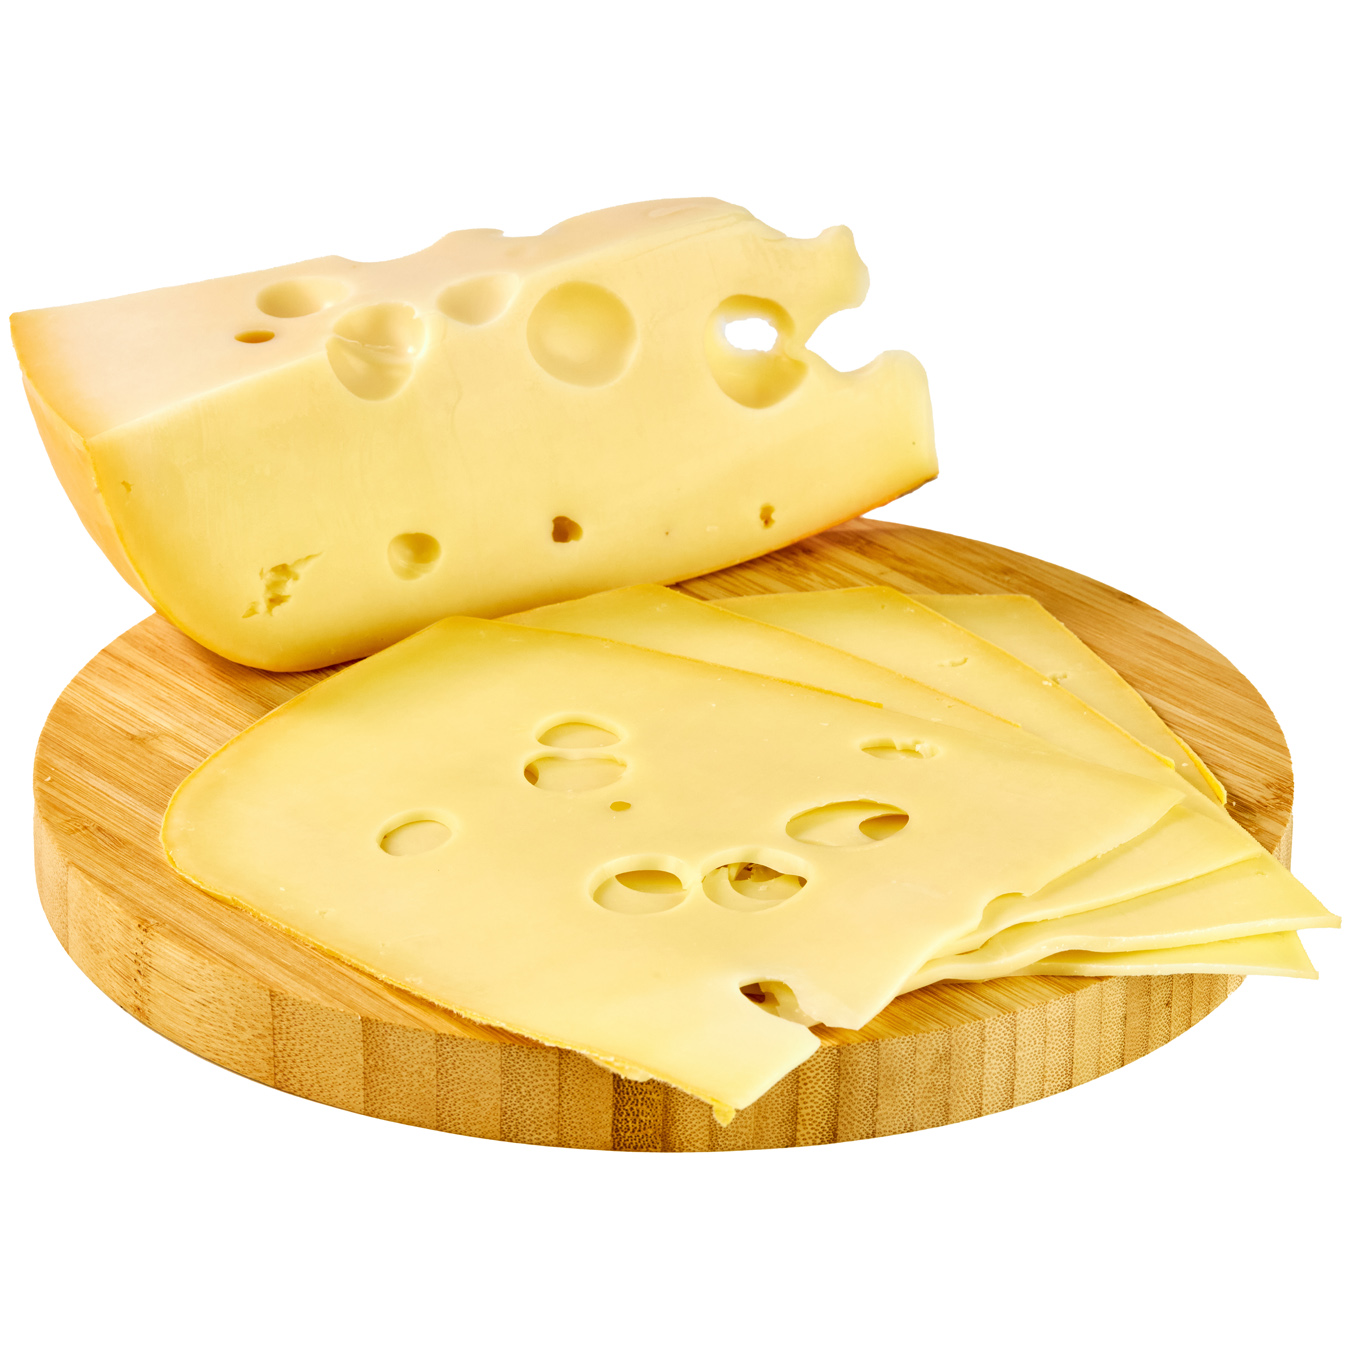 Holland Farmer Maasdam cheese 45%